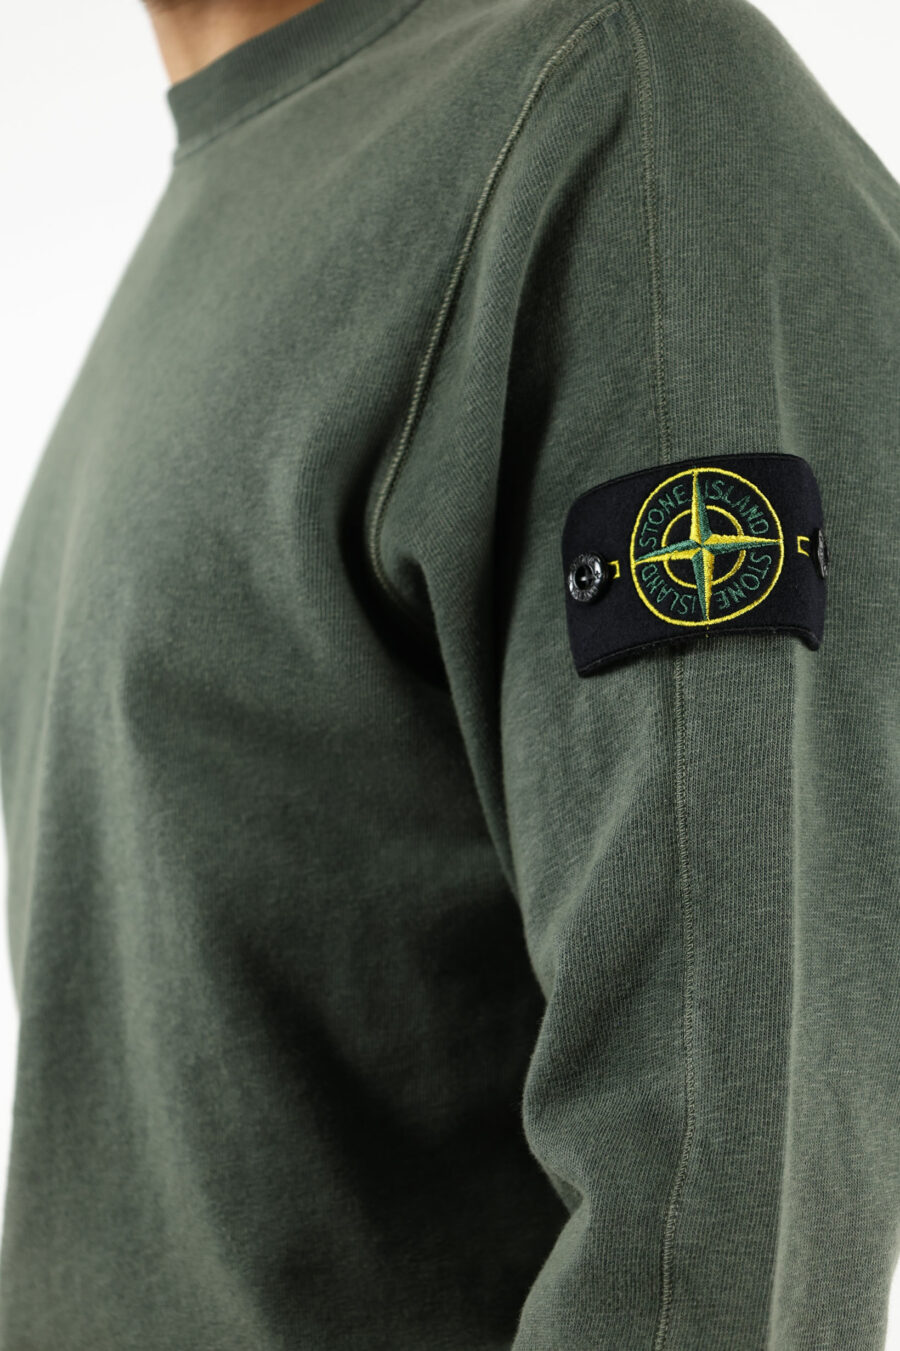 Grünes Sweatshirt mit Kompass-Logoaufnäher - 111392